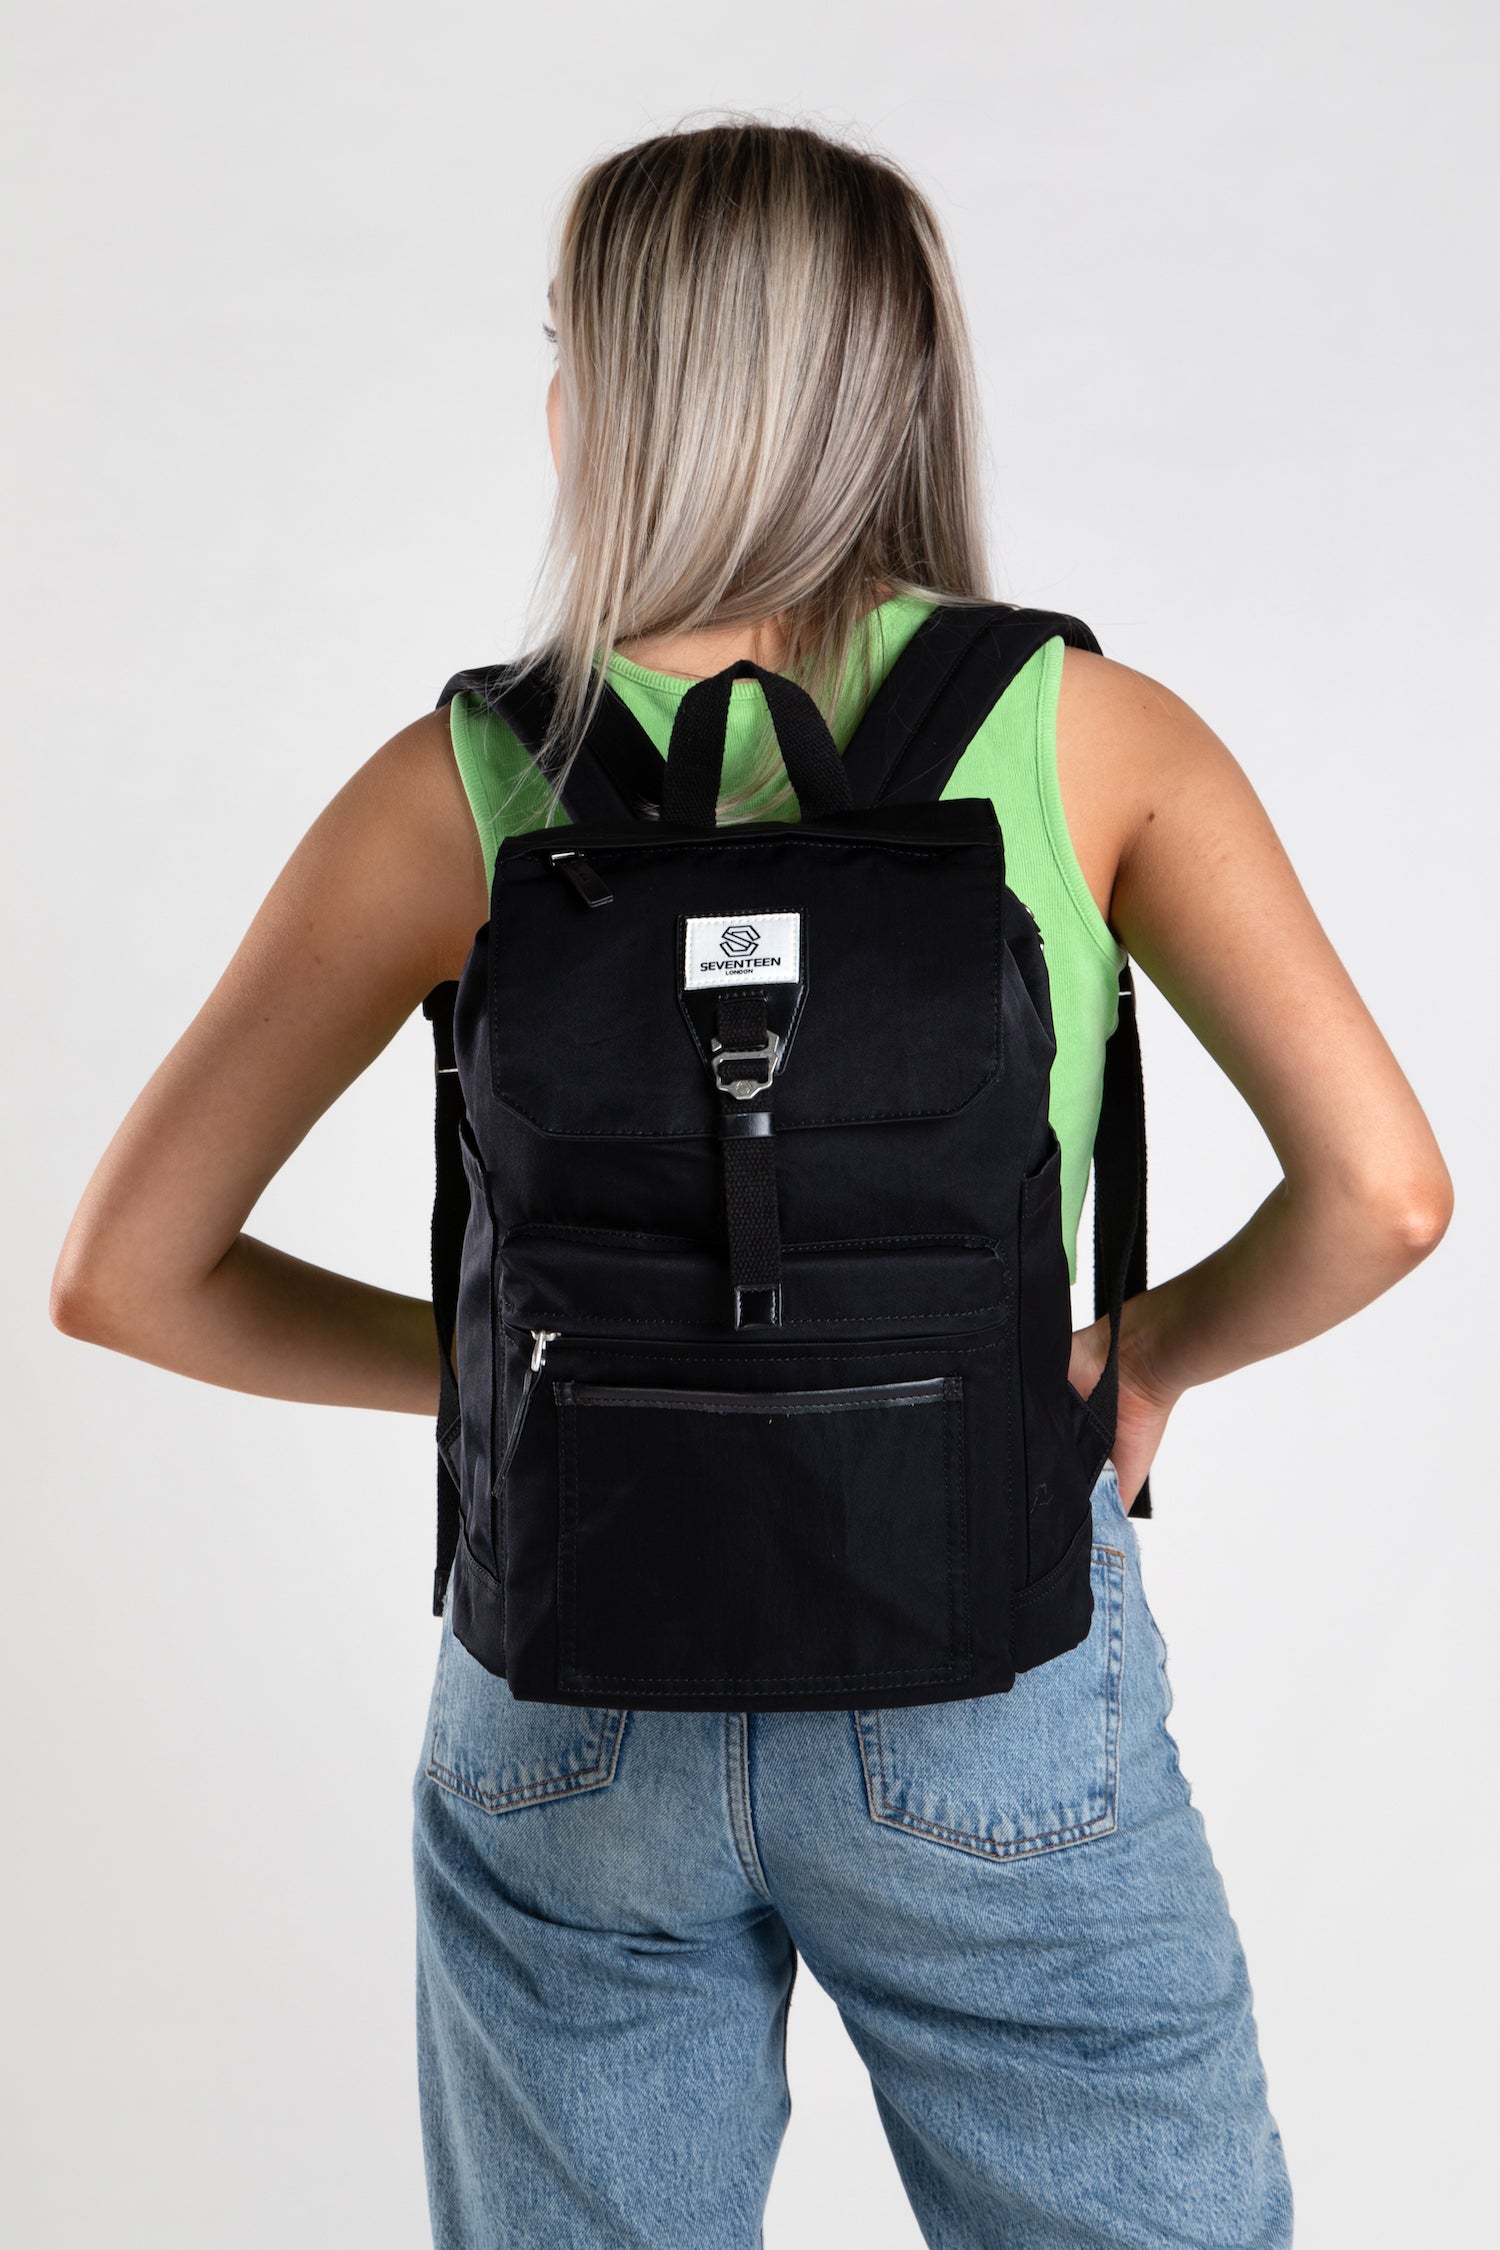 Fulham Backpack - Black